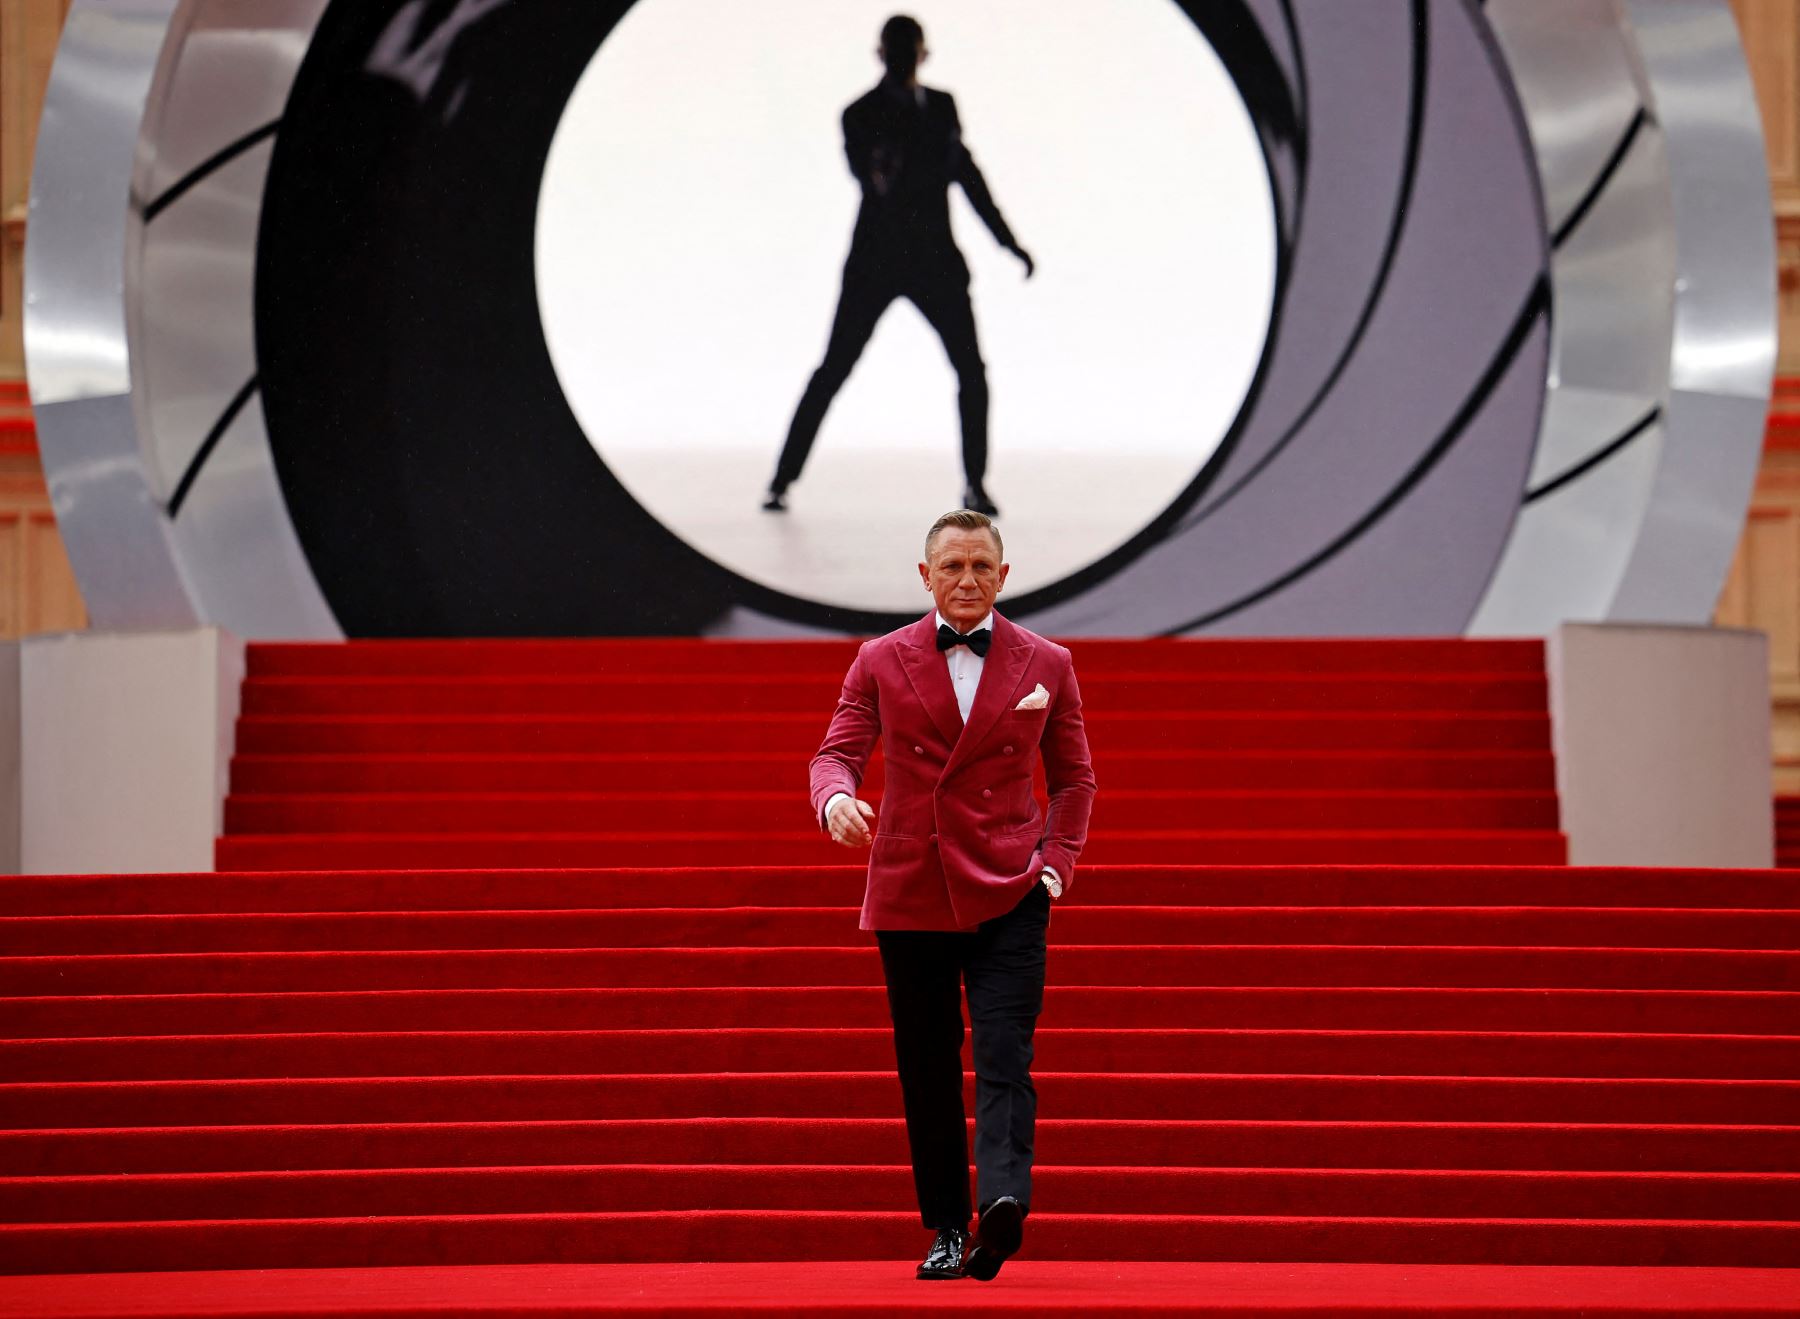 El actor inglés Daniel Craig posa en la alfombra roja después de asistir al estreno mundial de la película de James Bond "No Time to Die" en el Royal Albert Hall en el oeste de Londres. Foto: AFP